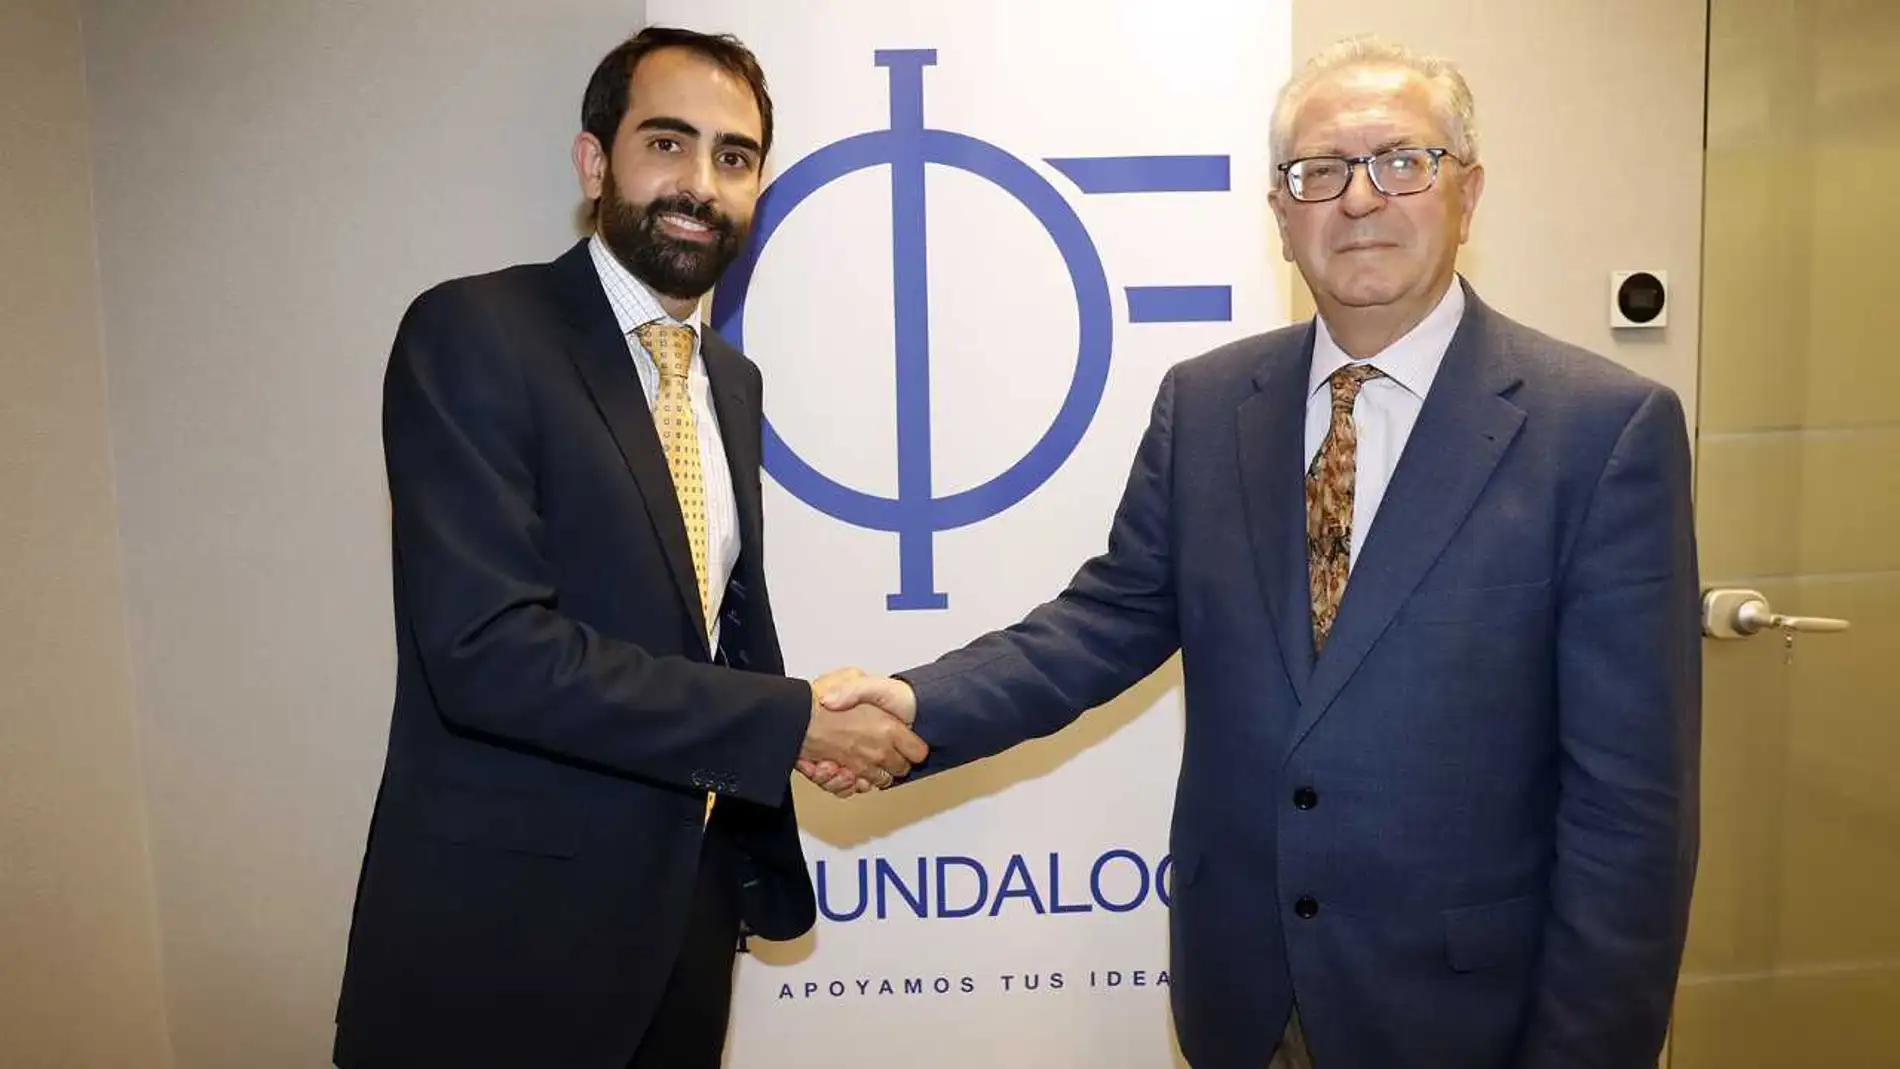 El director general de Fundalogy, Javier de Pro, y el director general del PTA, Felipe Romera, han suscrito un convenio de colaboración /Foto: La Razón